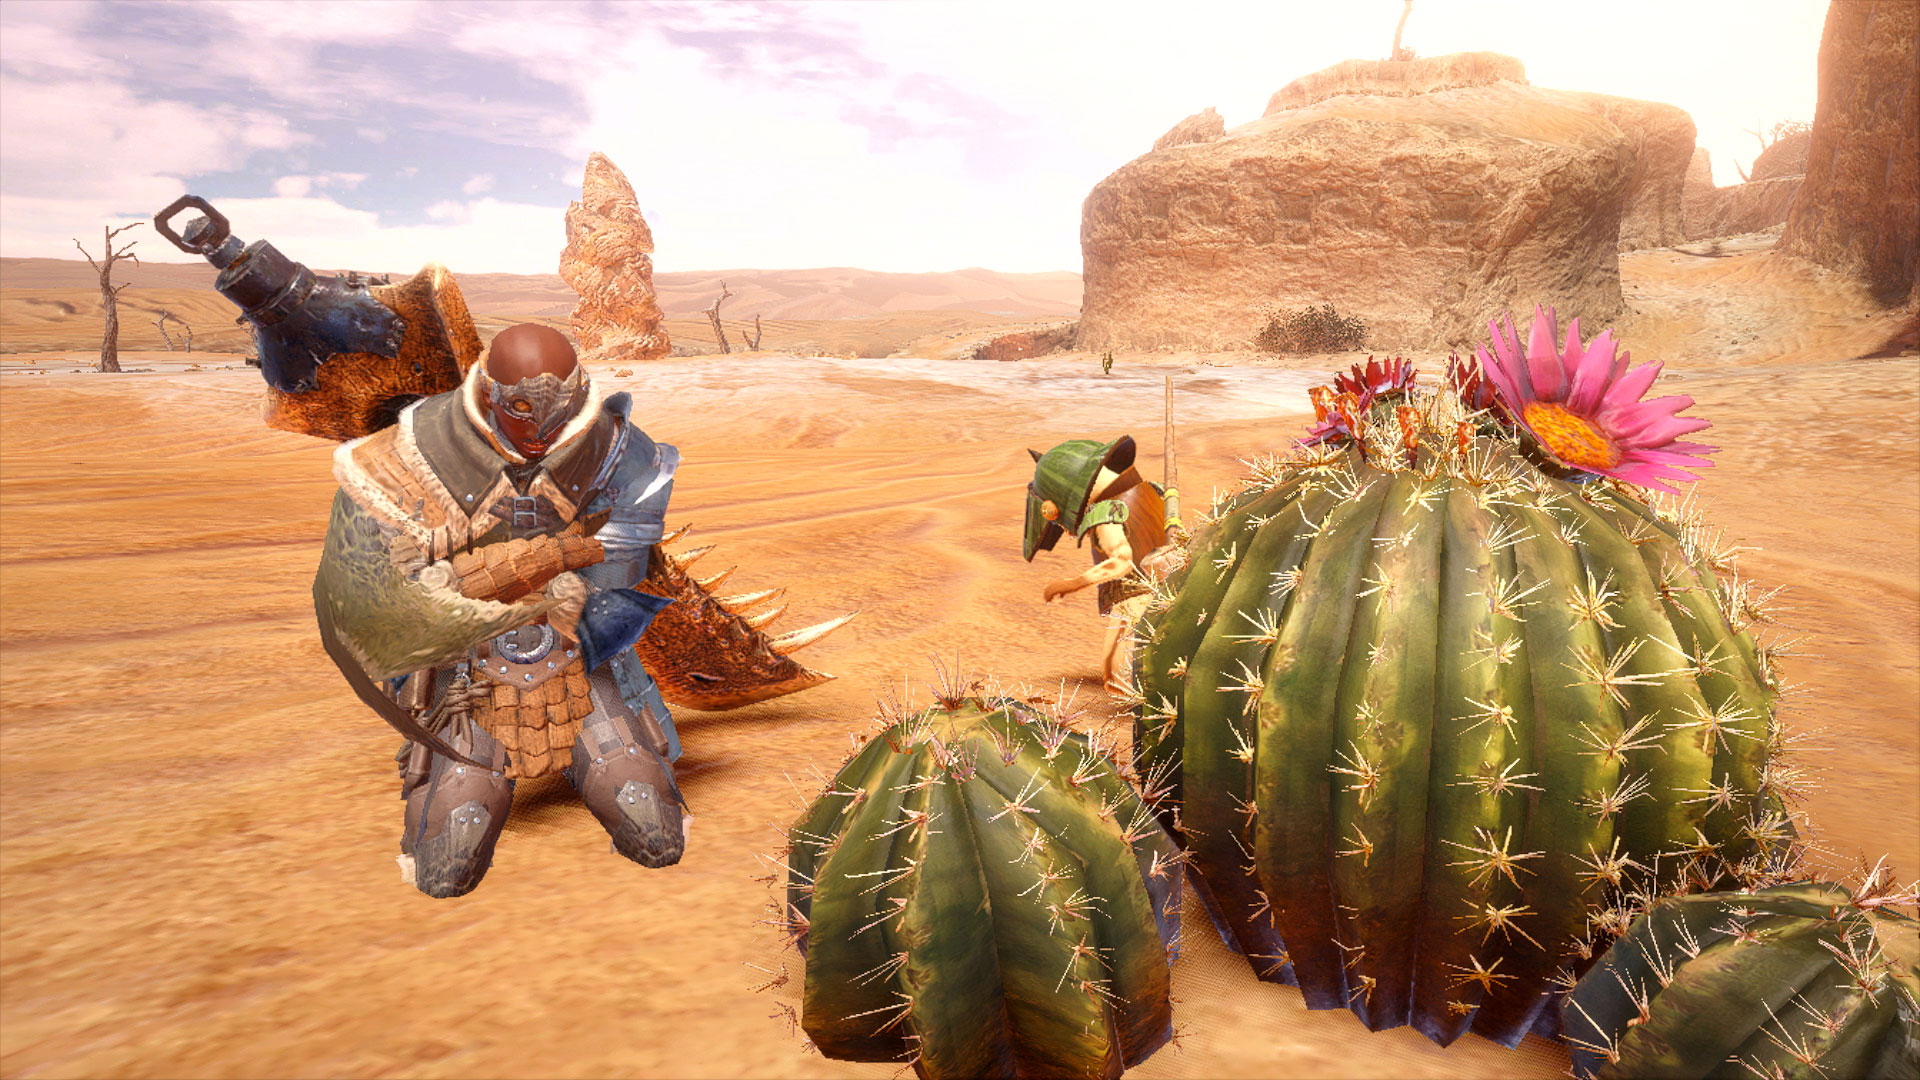 Monster hunter diablos battling with a warrior in the desert